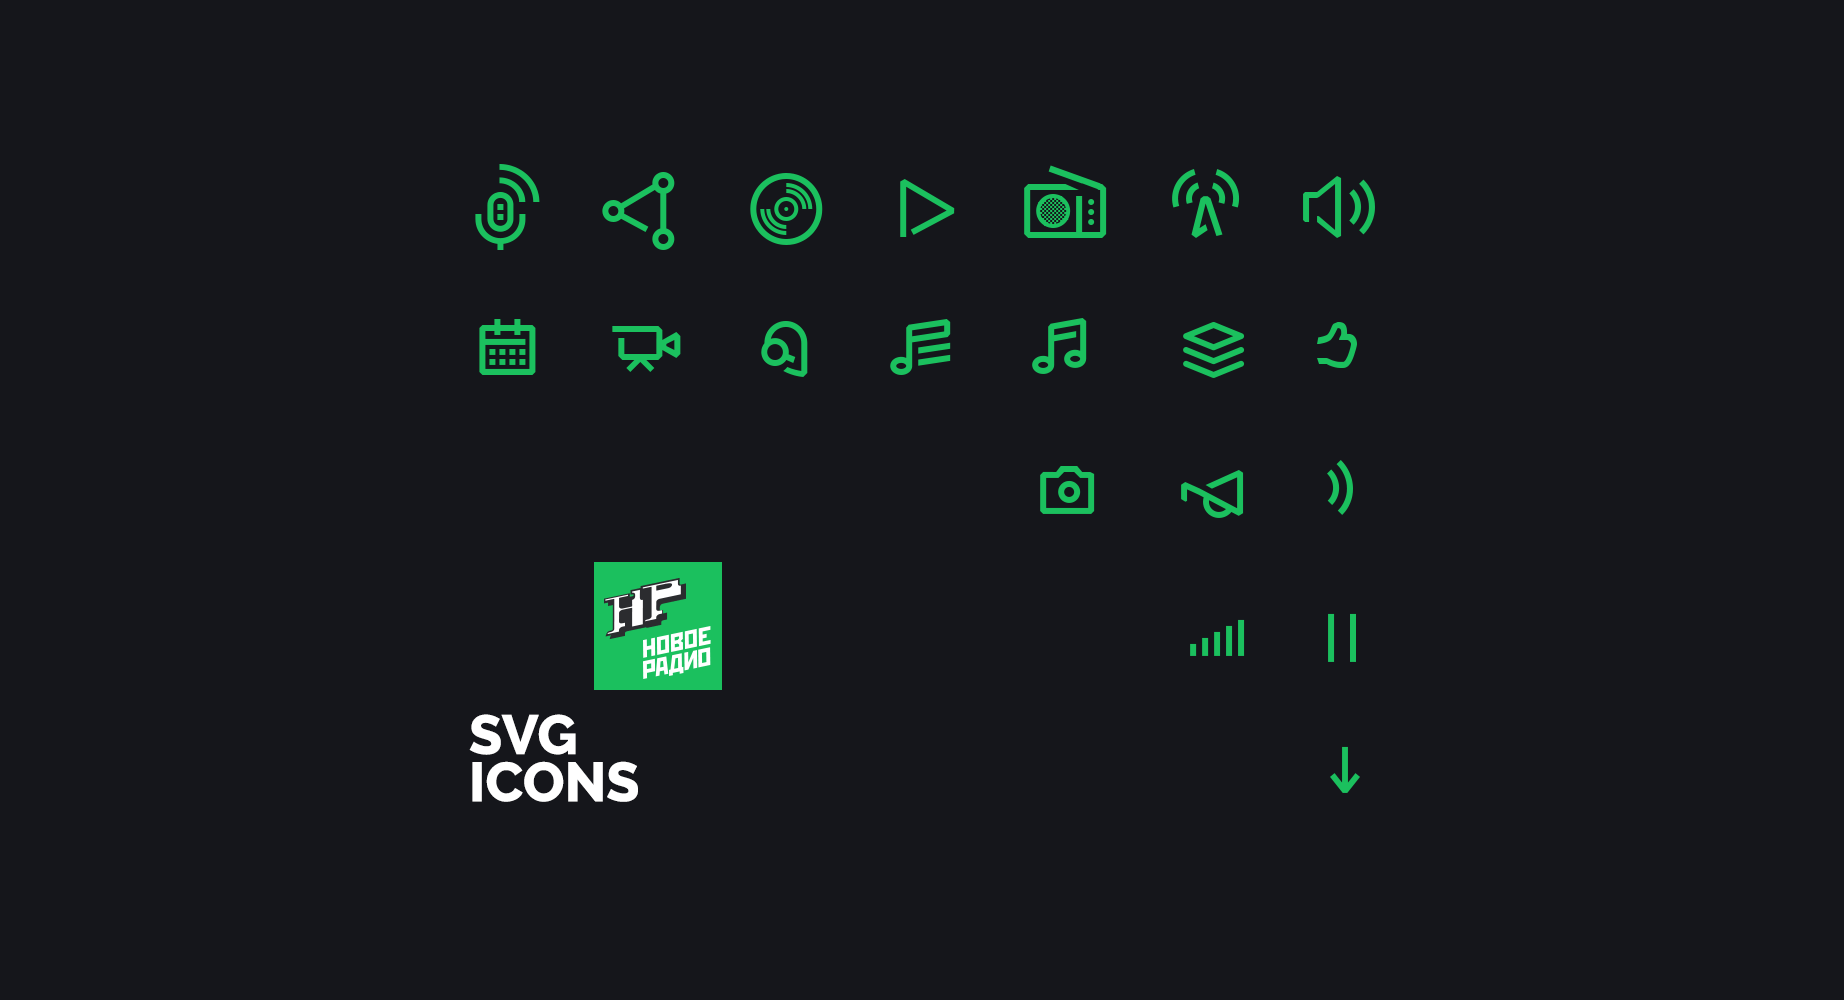 Full 5 1 slider icons